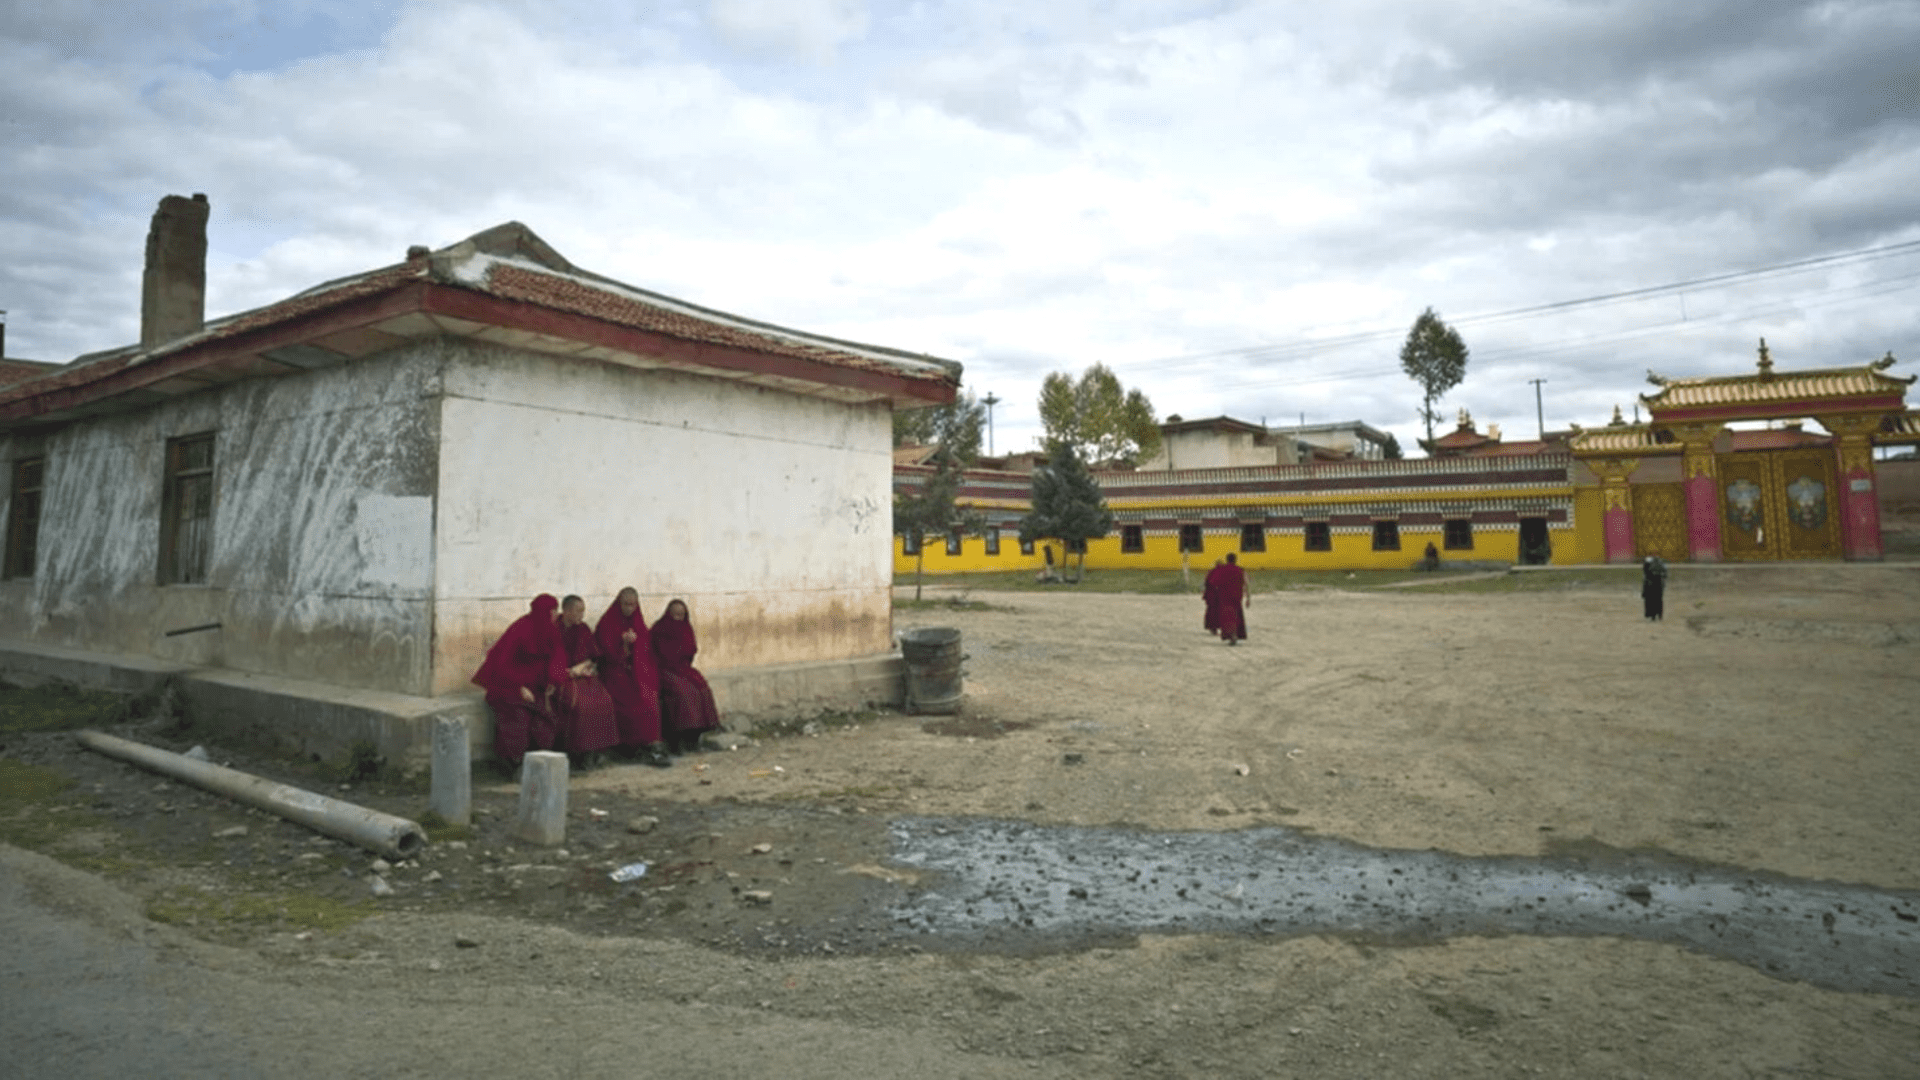 Monks sit near the entrance of Kirti monastery in Ngaba, 2011